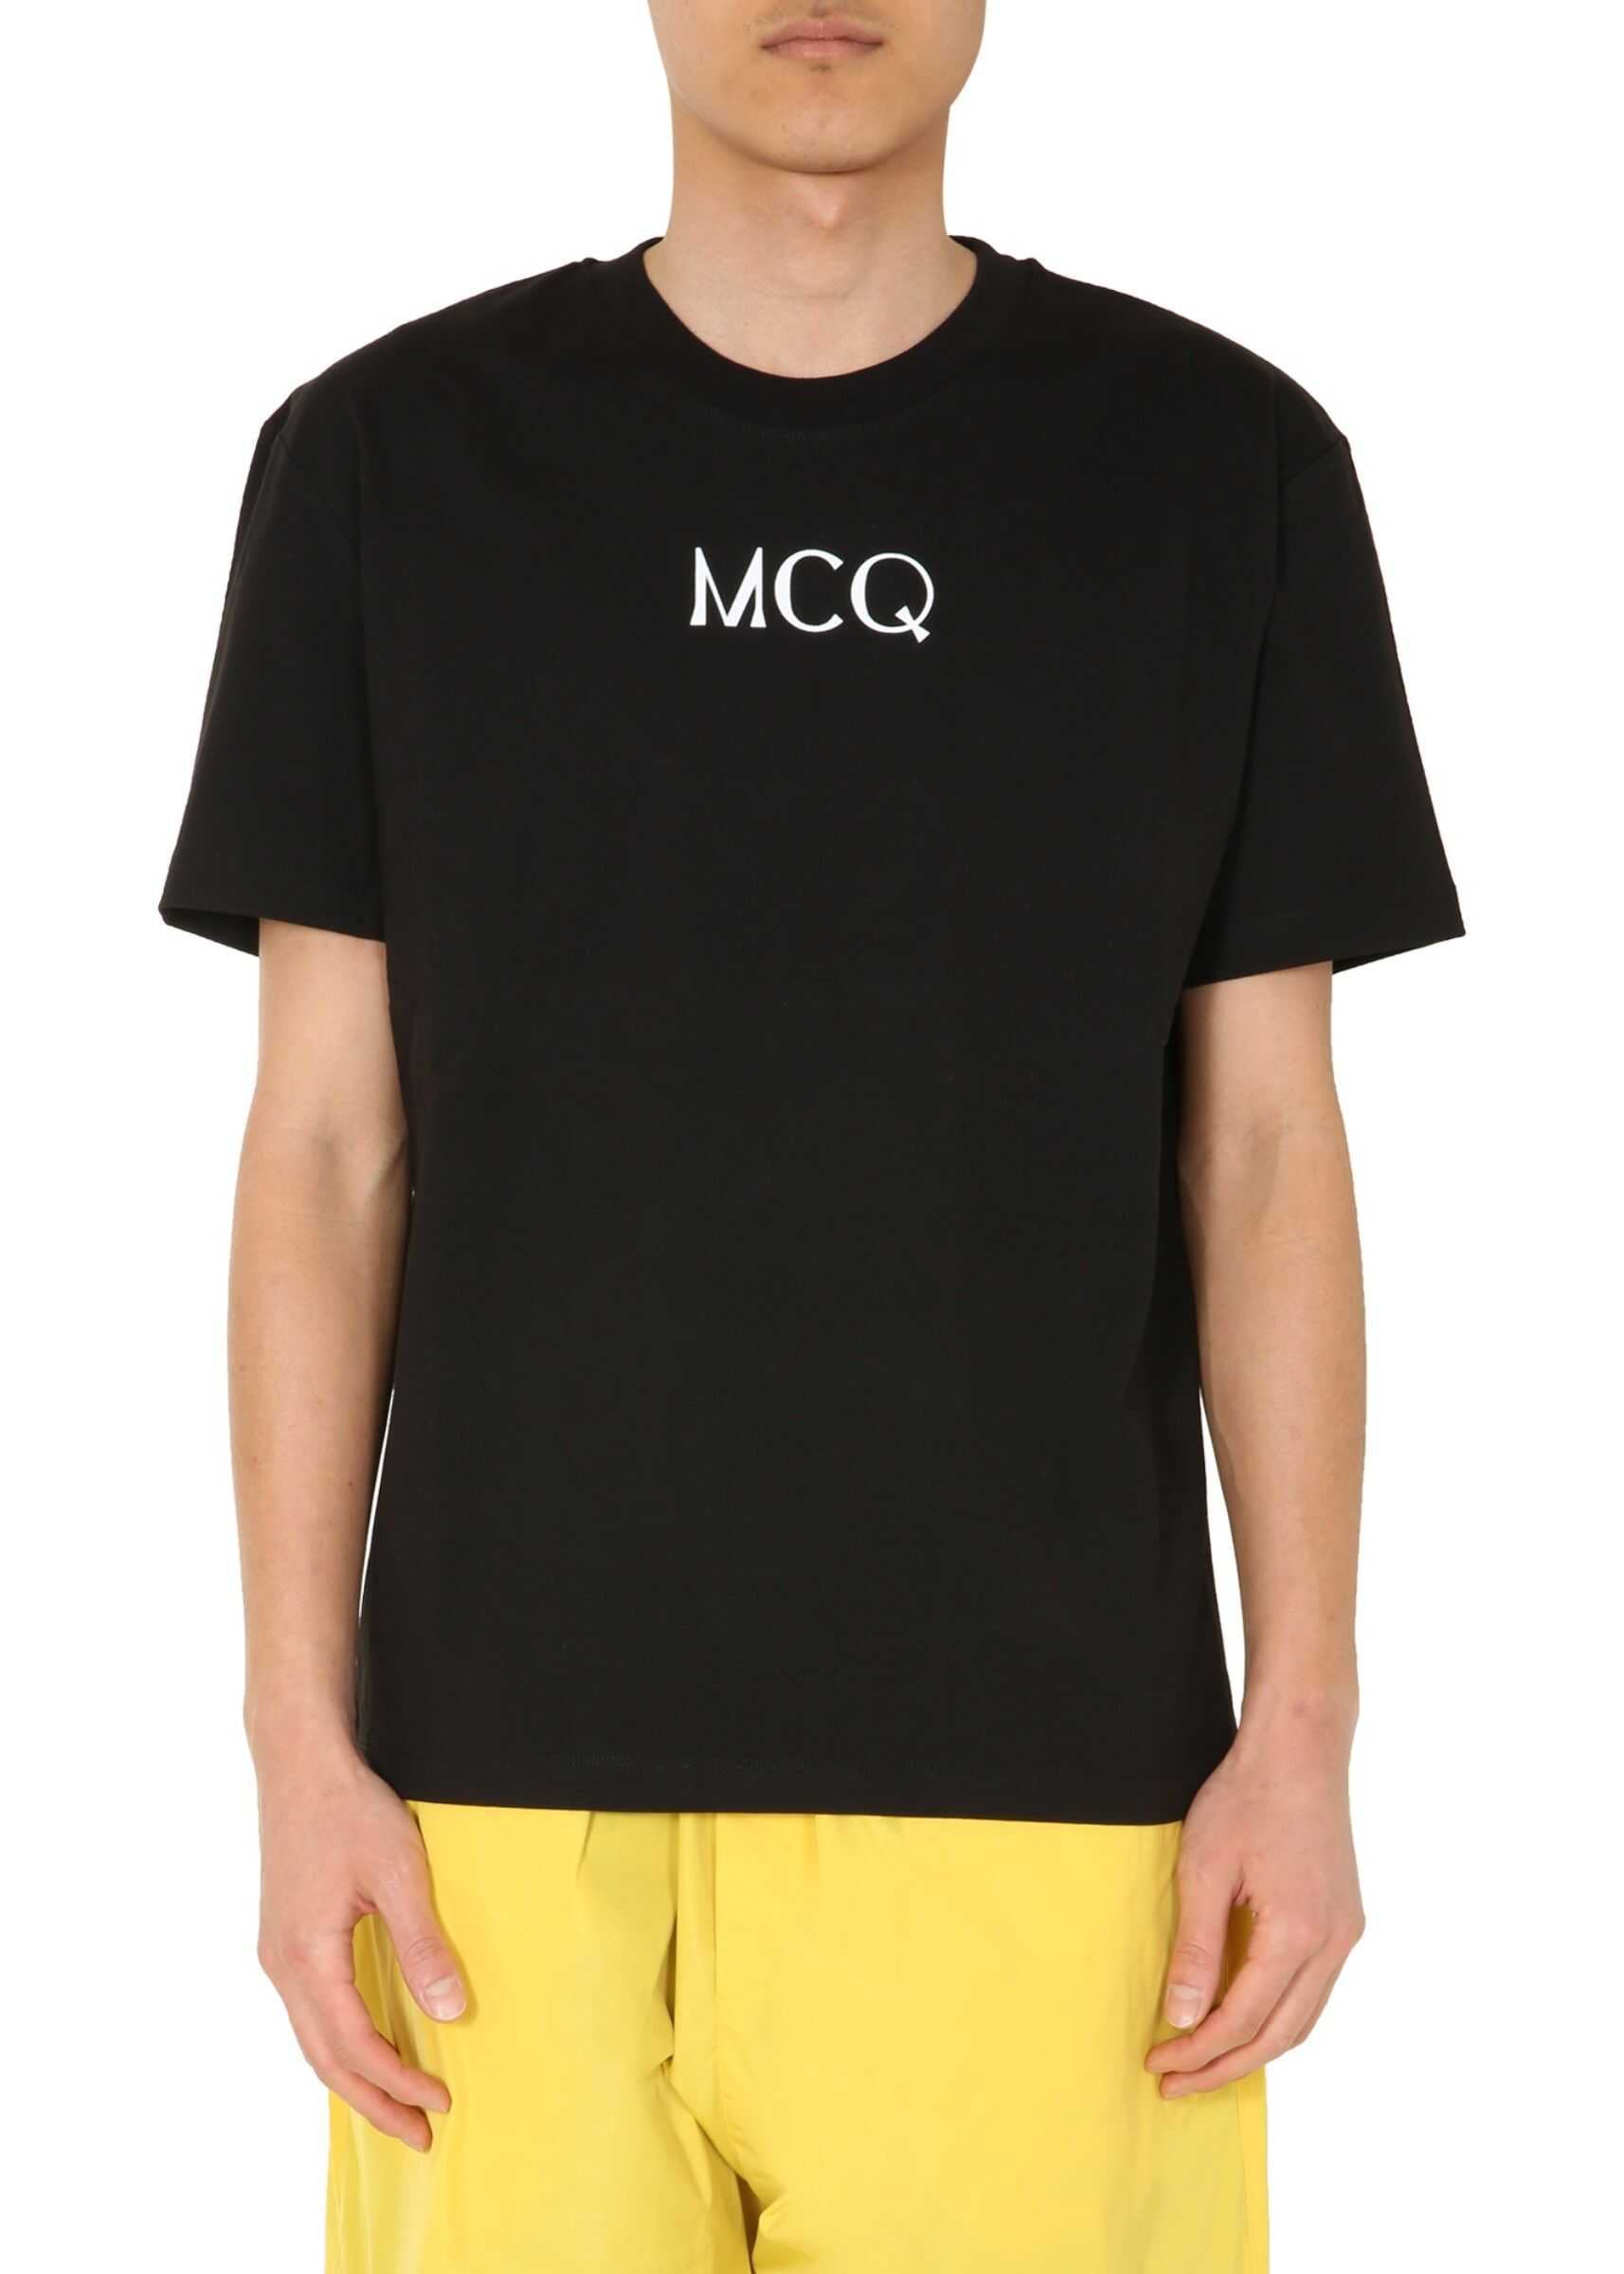 MCQ Alexander McQueen Round Neck T-Shirt BLACK